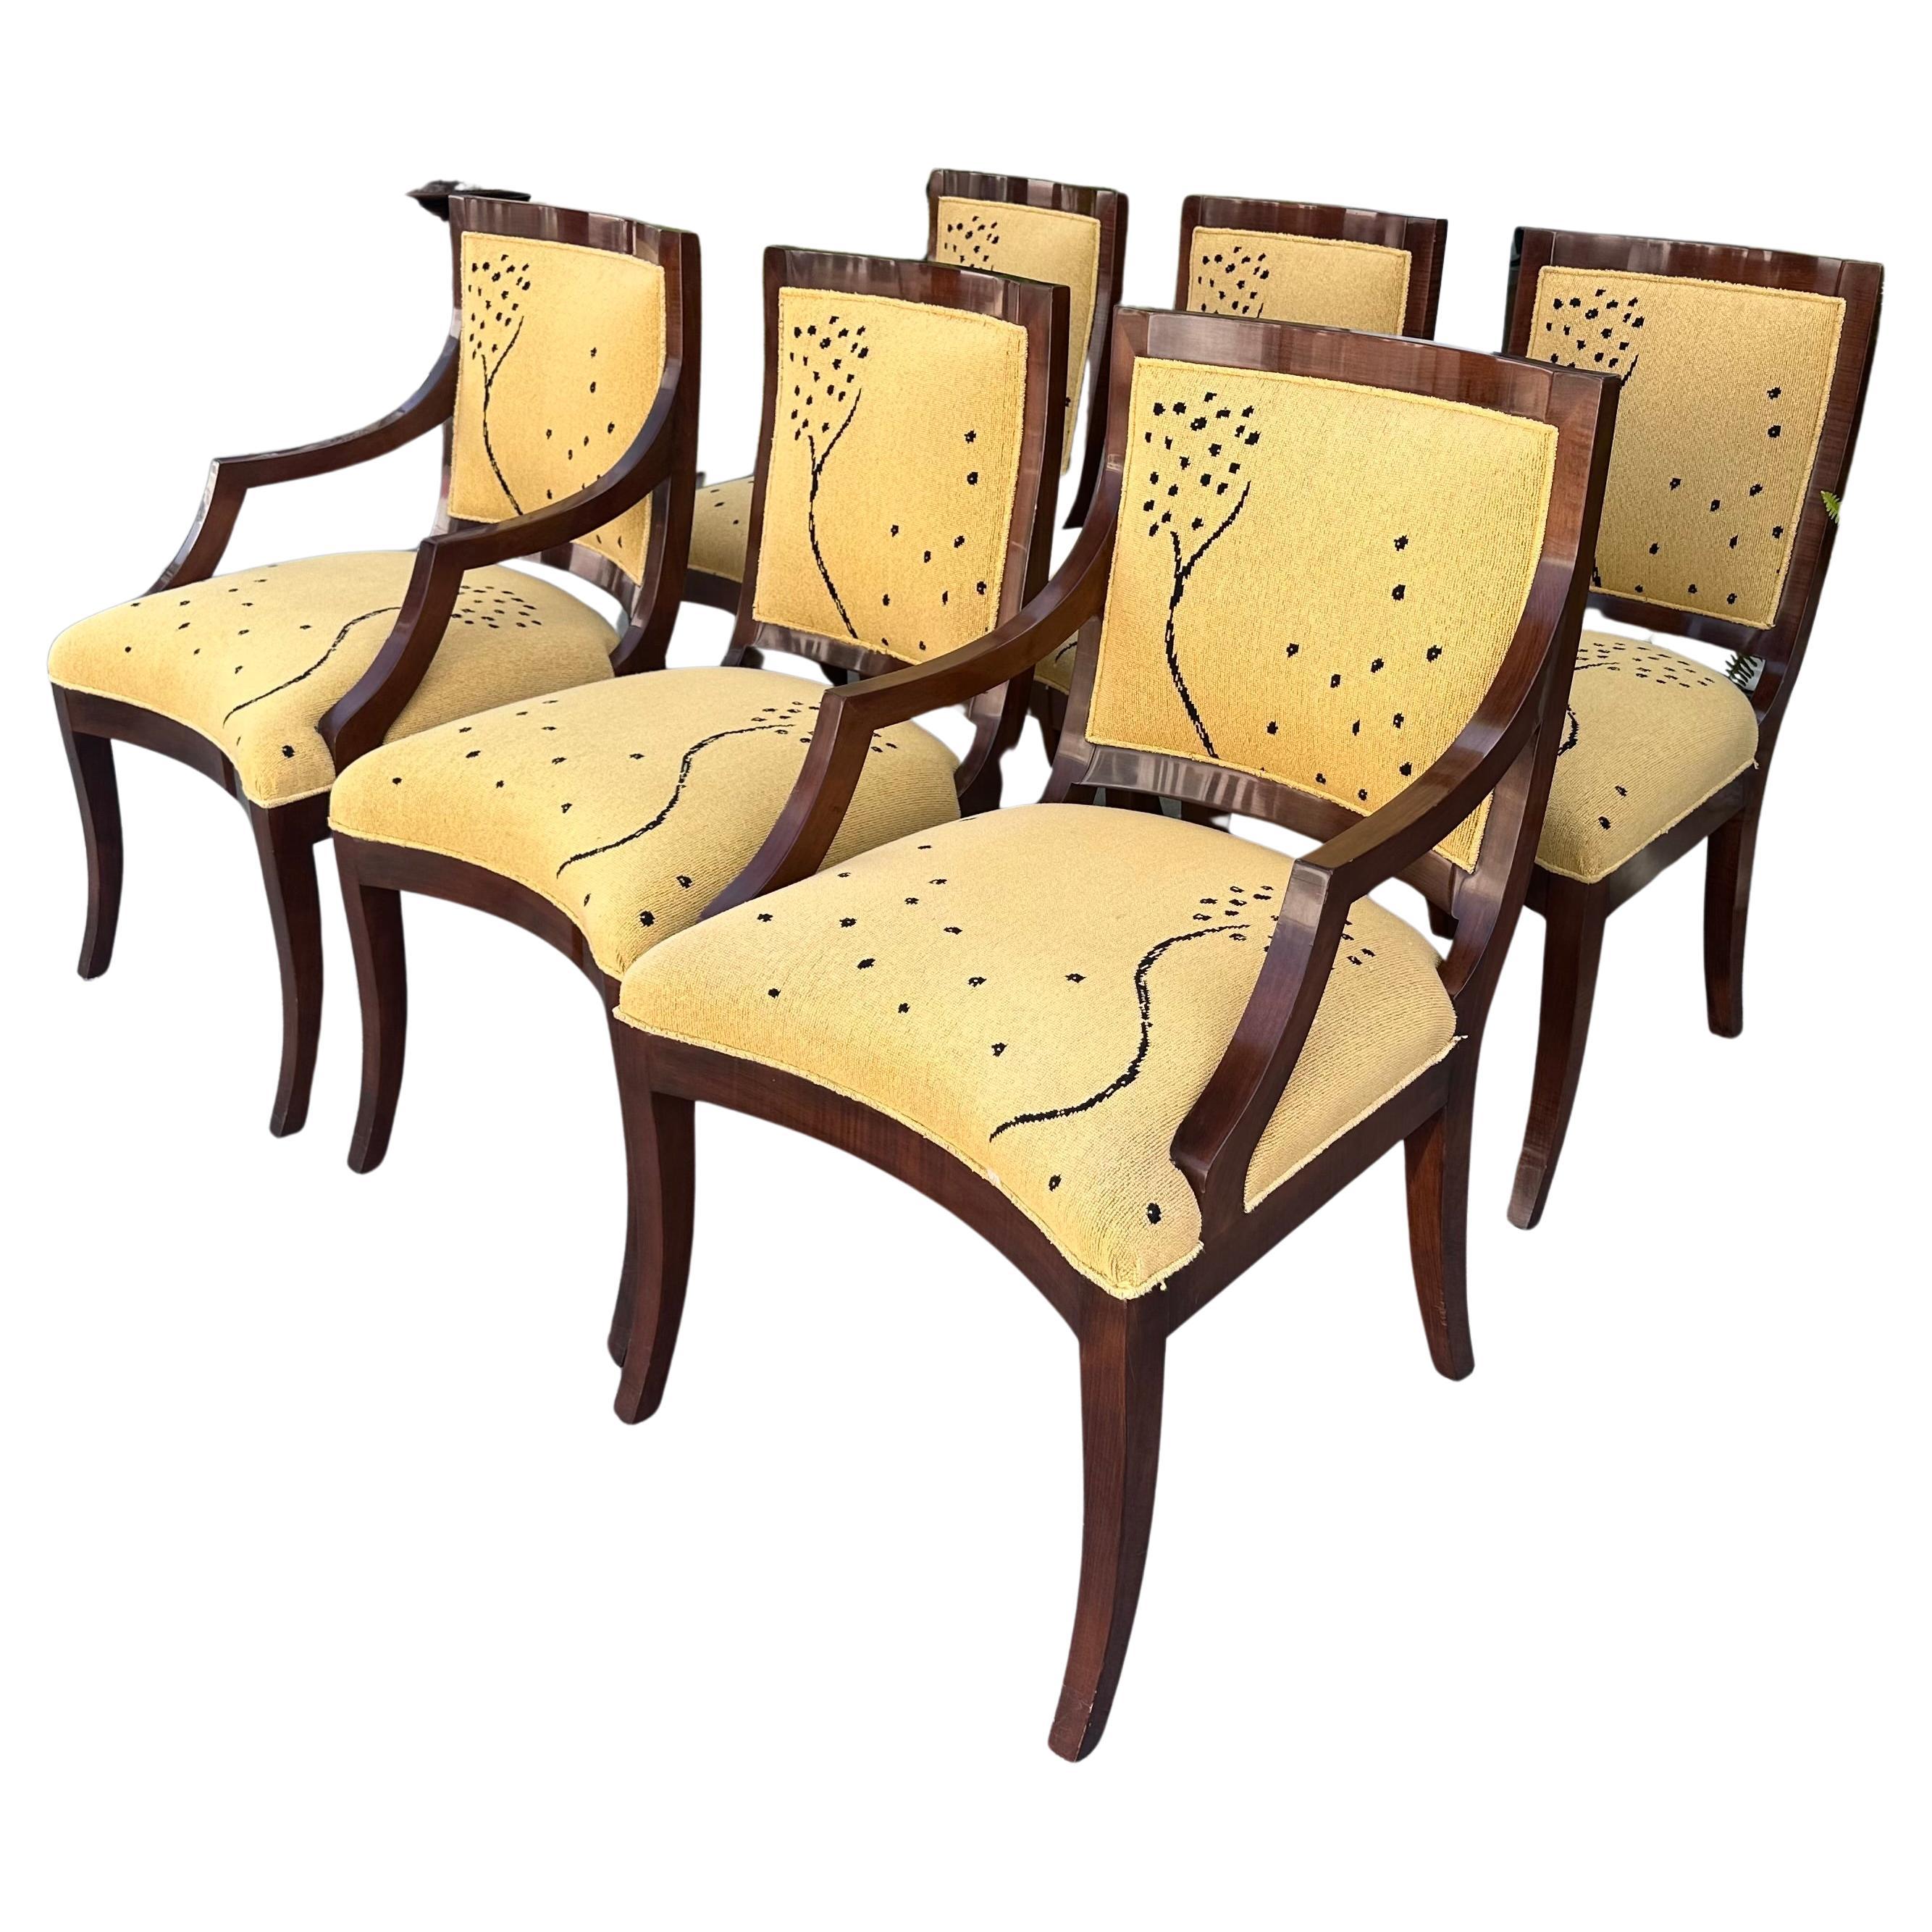 J. Robert Scott Chairs